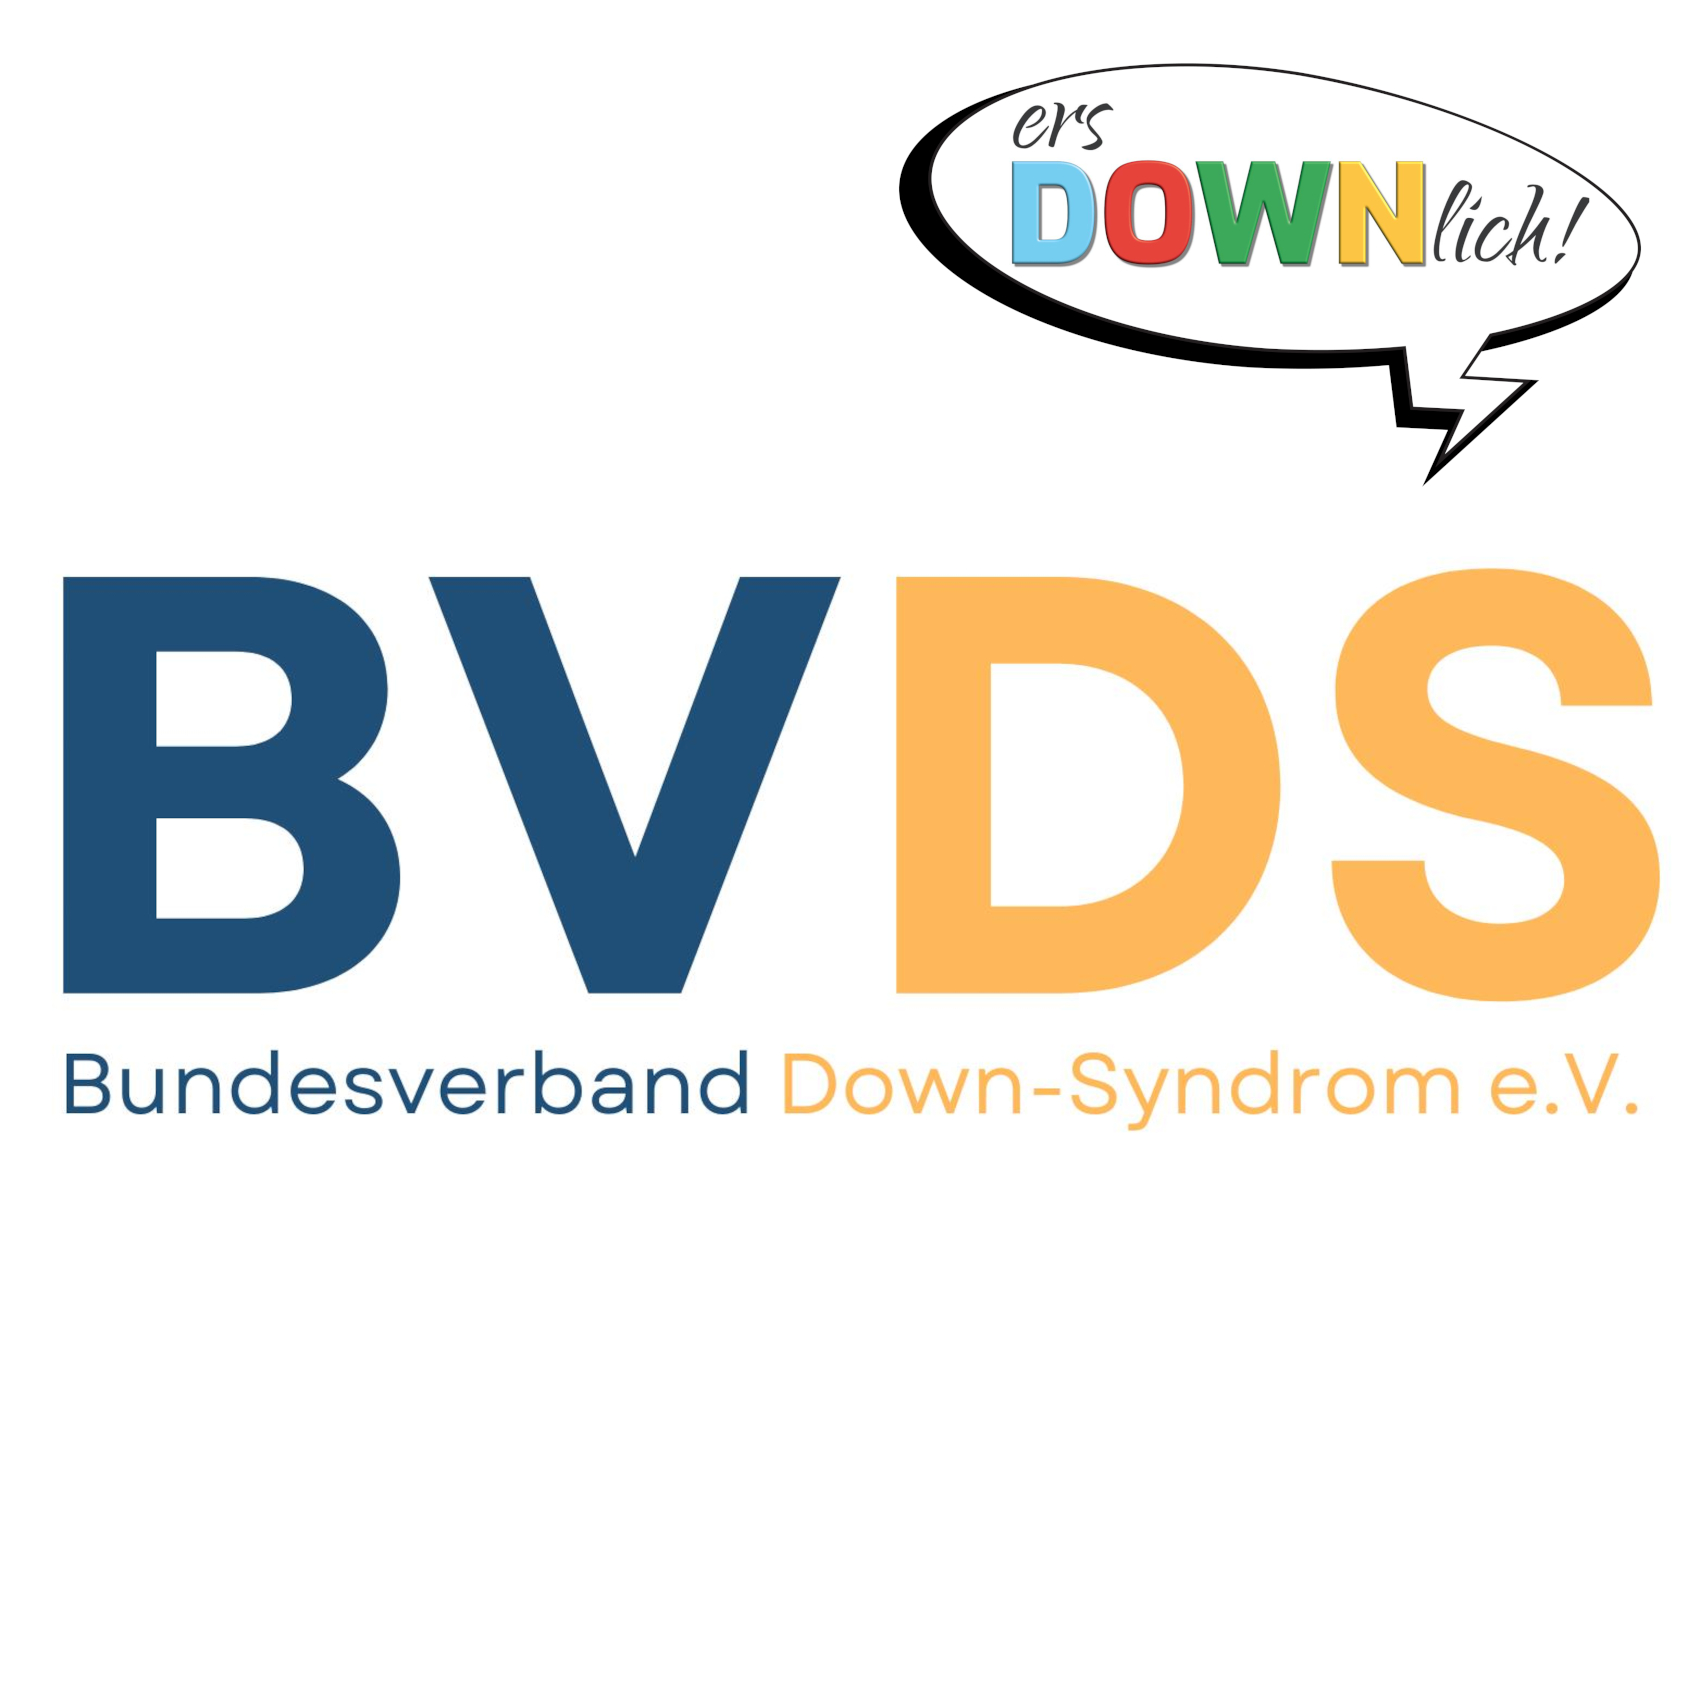 Logo des BVDS: Dunkelblaue Großbuchstaben „BV“ neben dunkelgelben Großbuchstaben „DS“ darunter in kleinerer Schrift in dunkelblau „Bundesverband“ und daneben in dunkelgelb „Down-Syndrom e.V.“. Rechts oben ist eine Sprechblase mit dem Logo von ersDOWNlich!